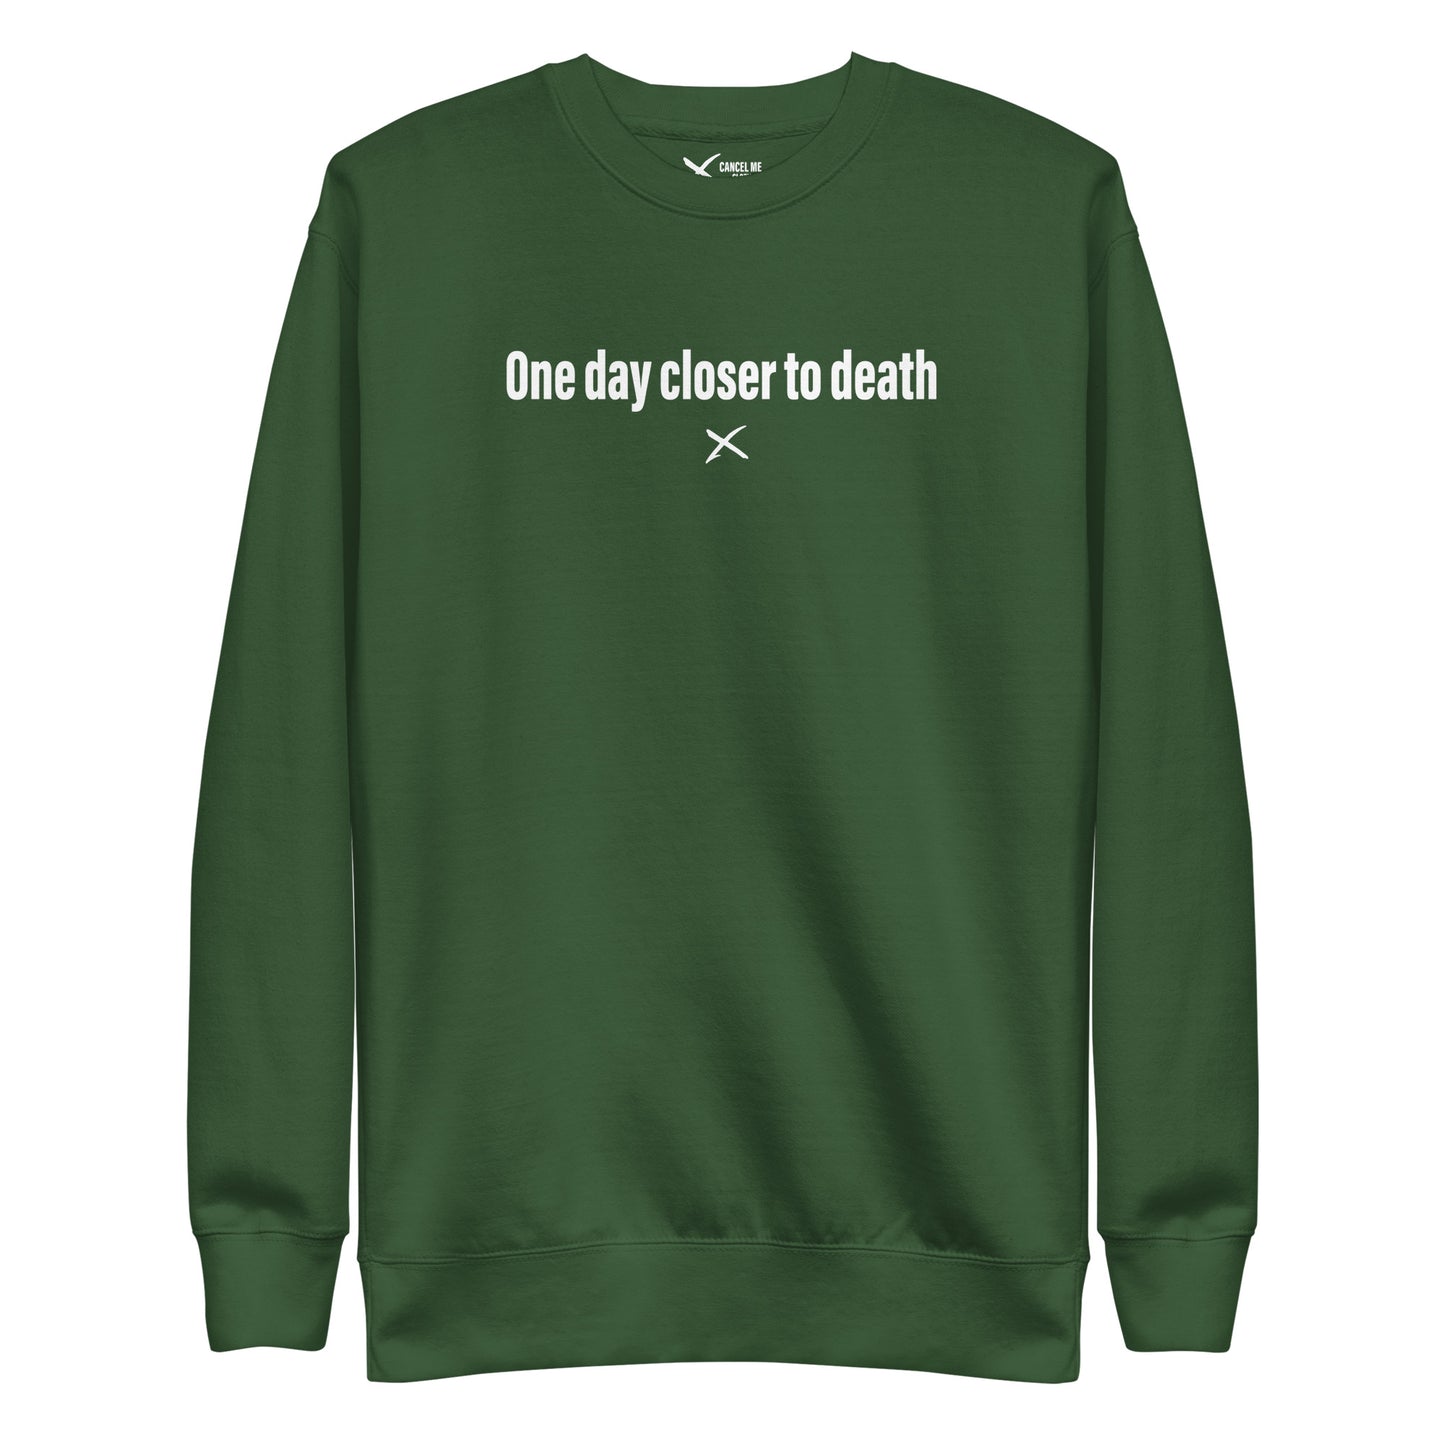 One day closer to death - Sweatshirt